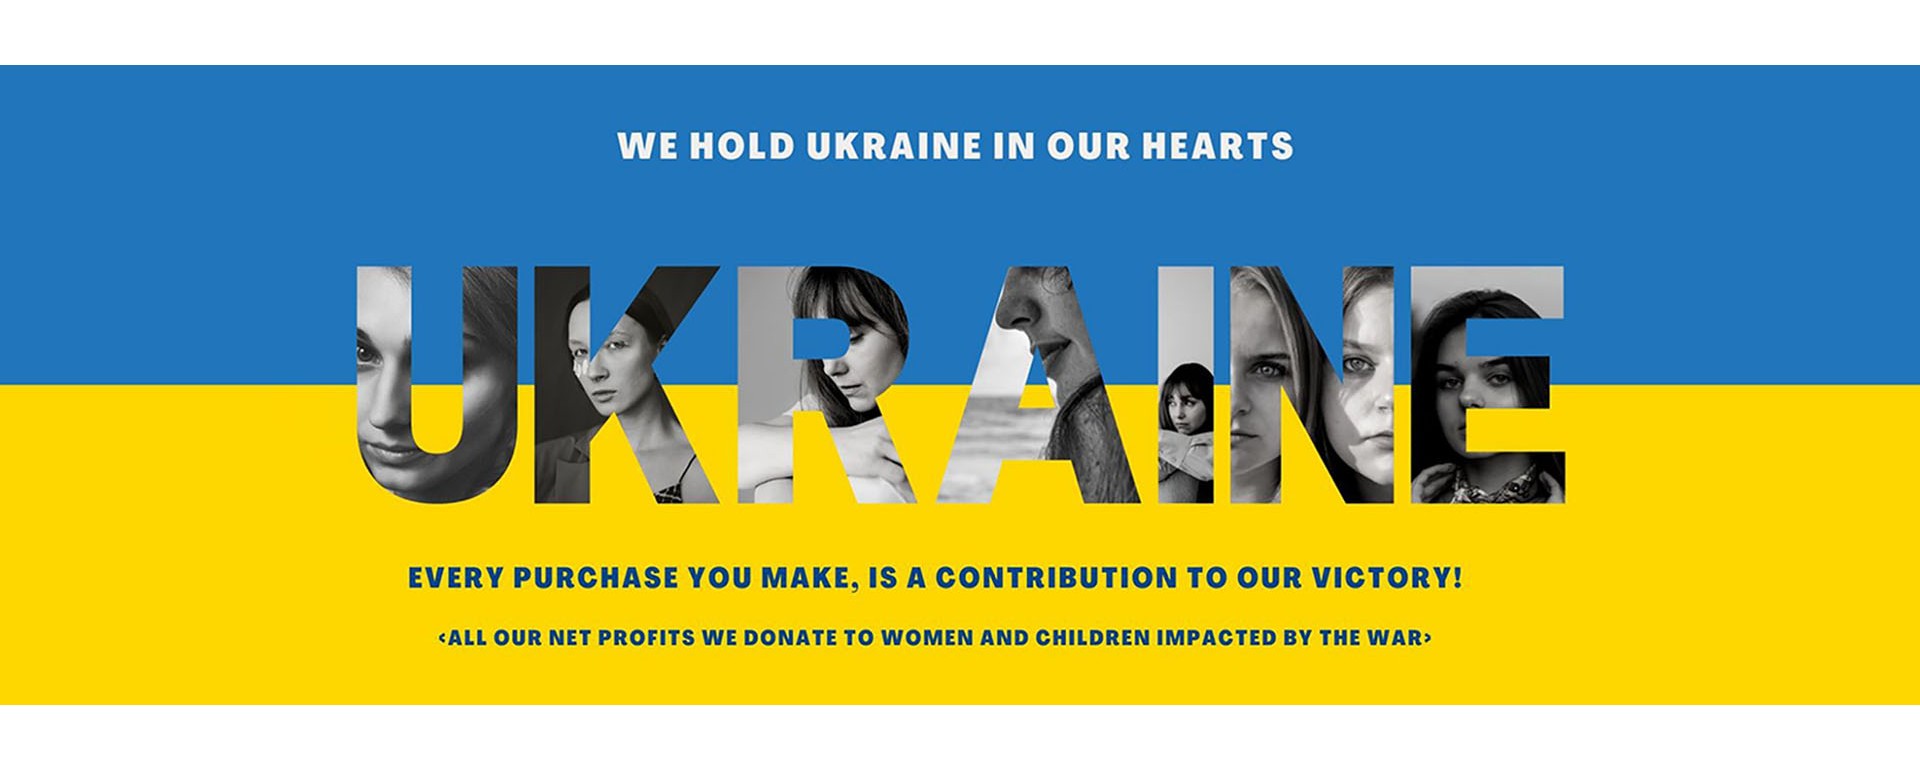 God bless Ukraine!